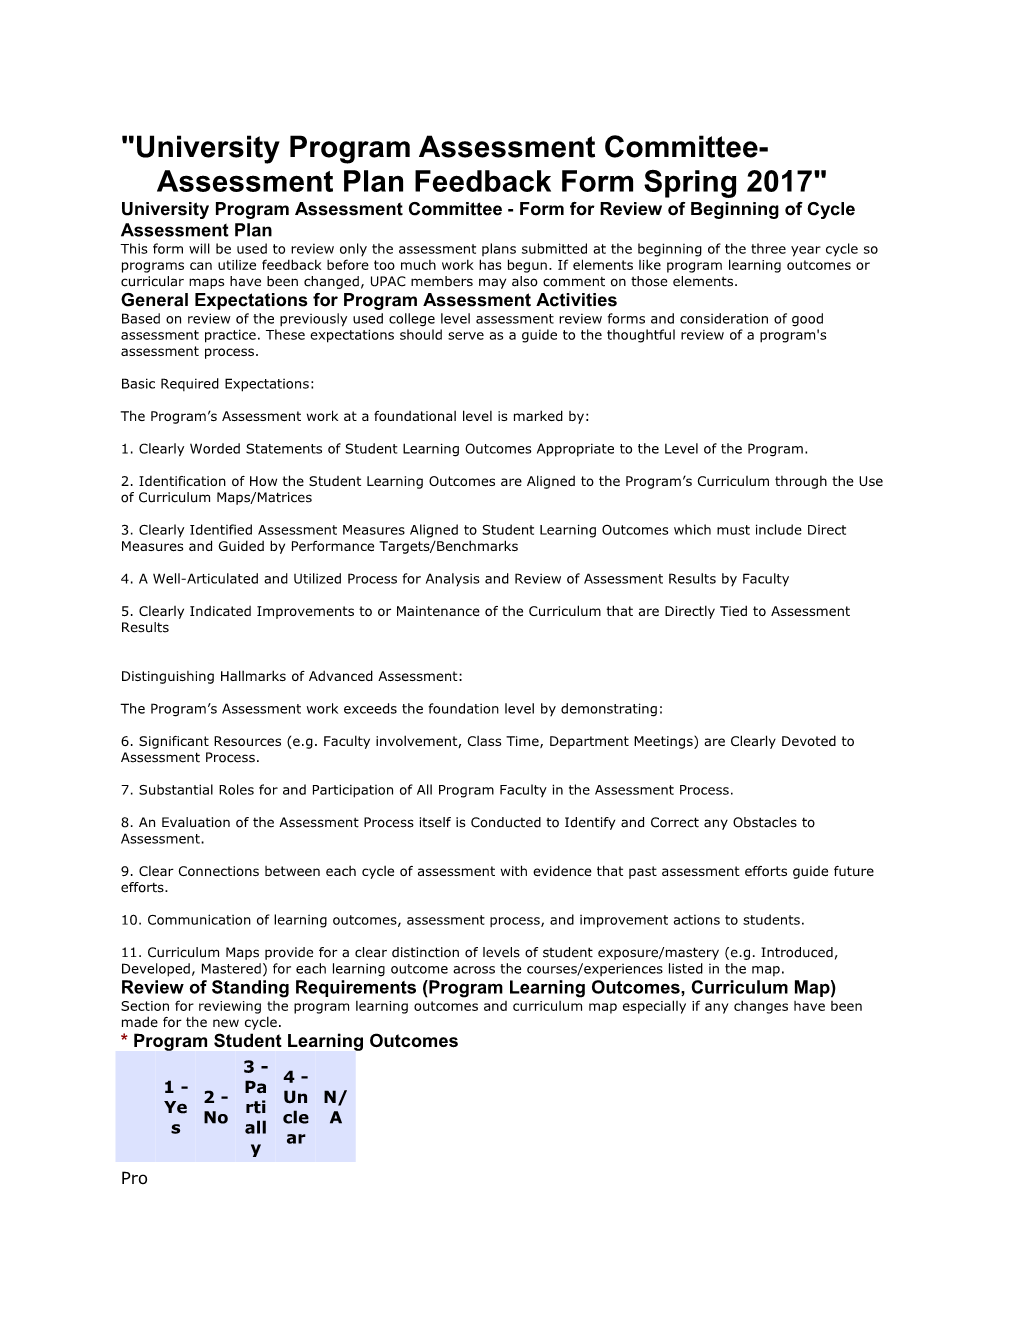 University Program Assessment Committee- Assessment Plan Feedback Form Spring 2017